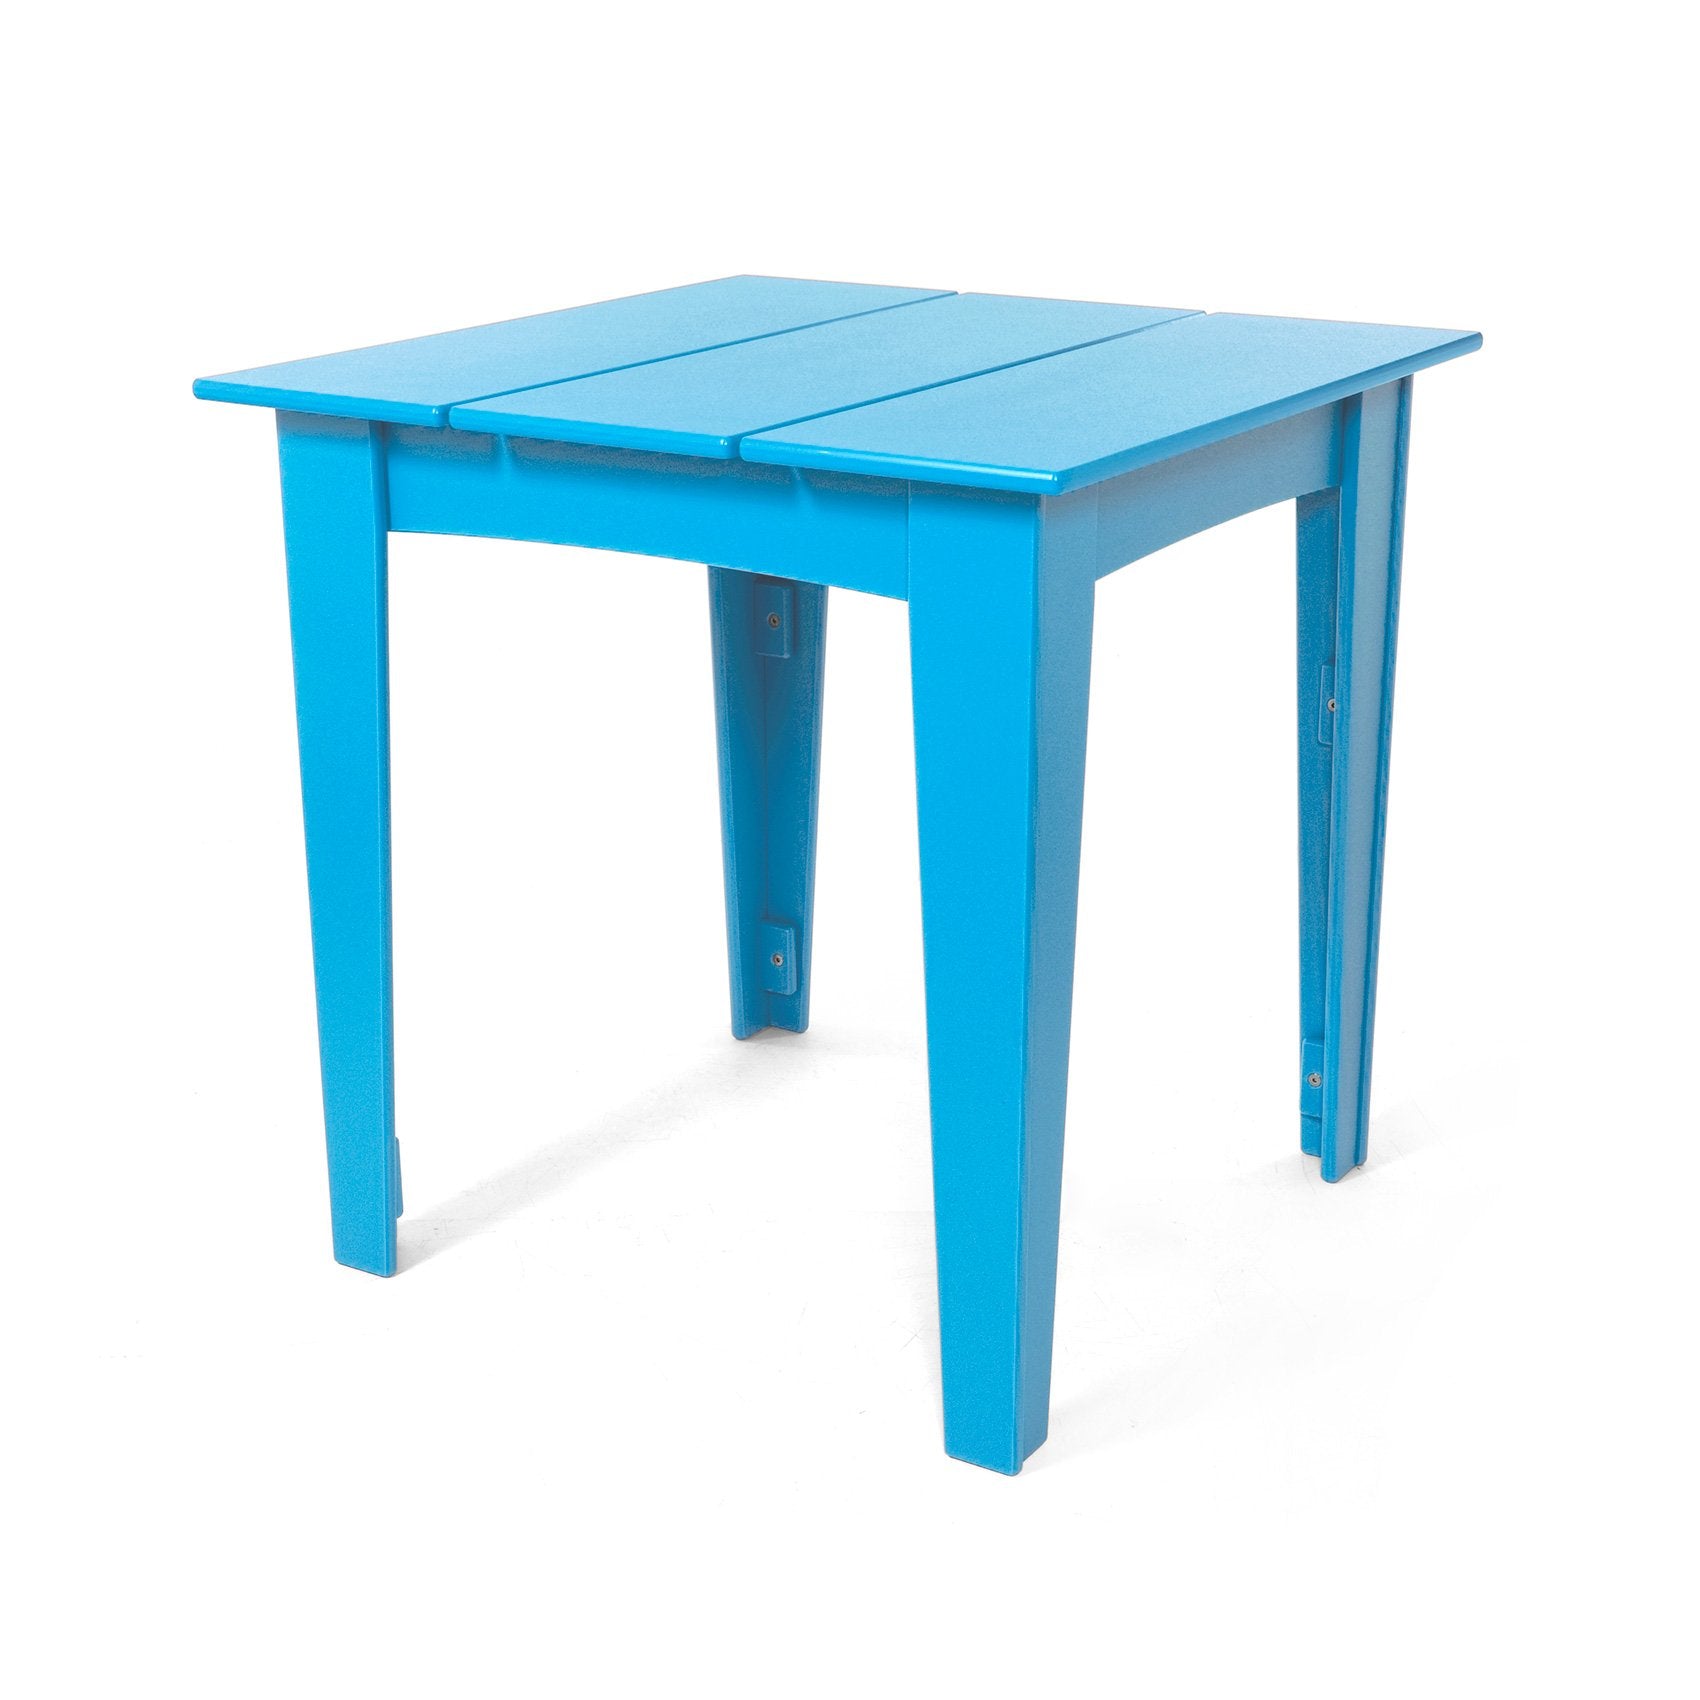 Alfresco Square Table (30 inch)